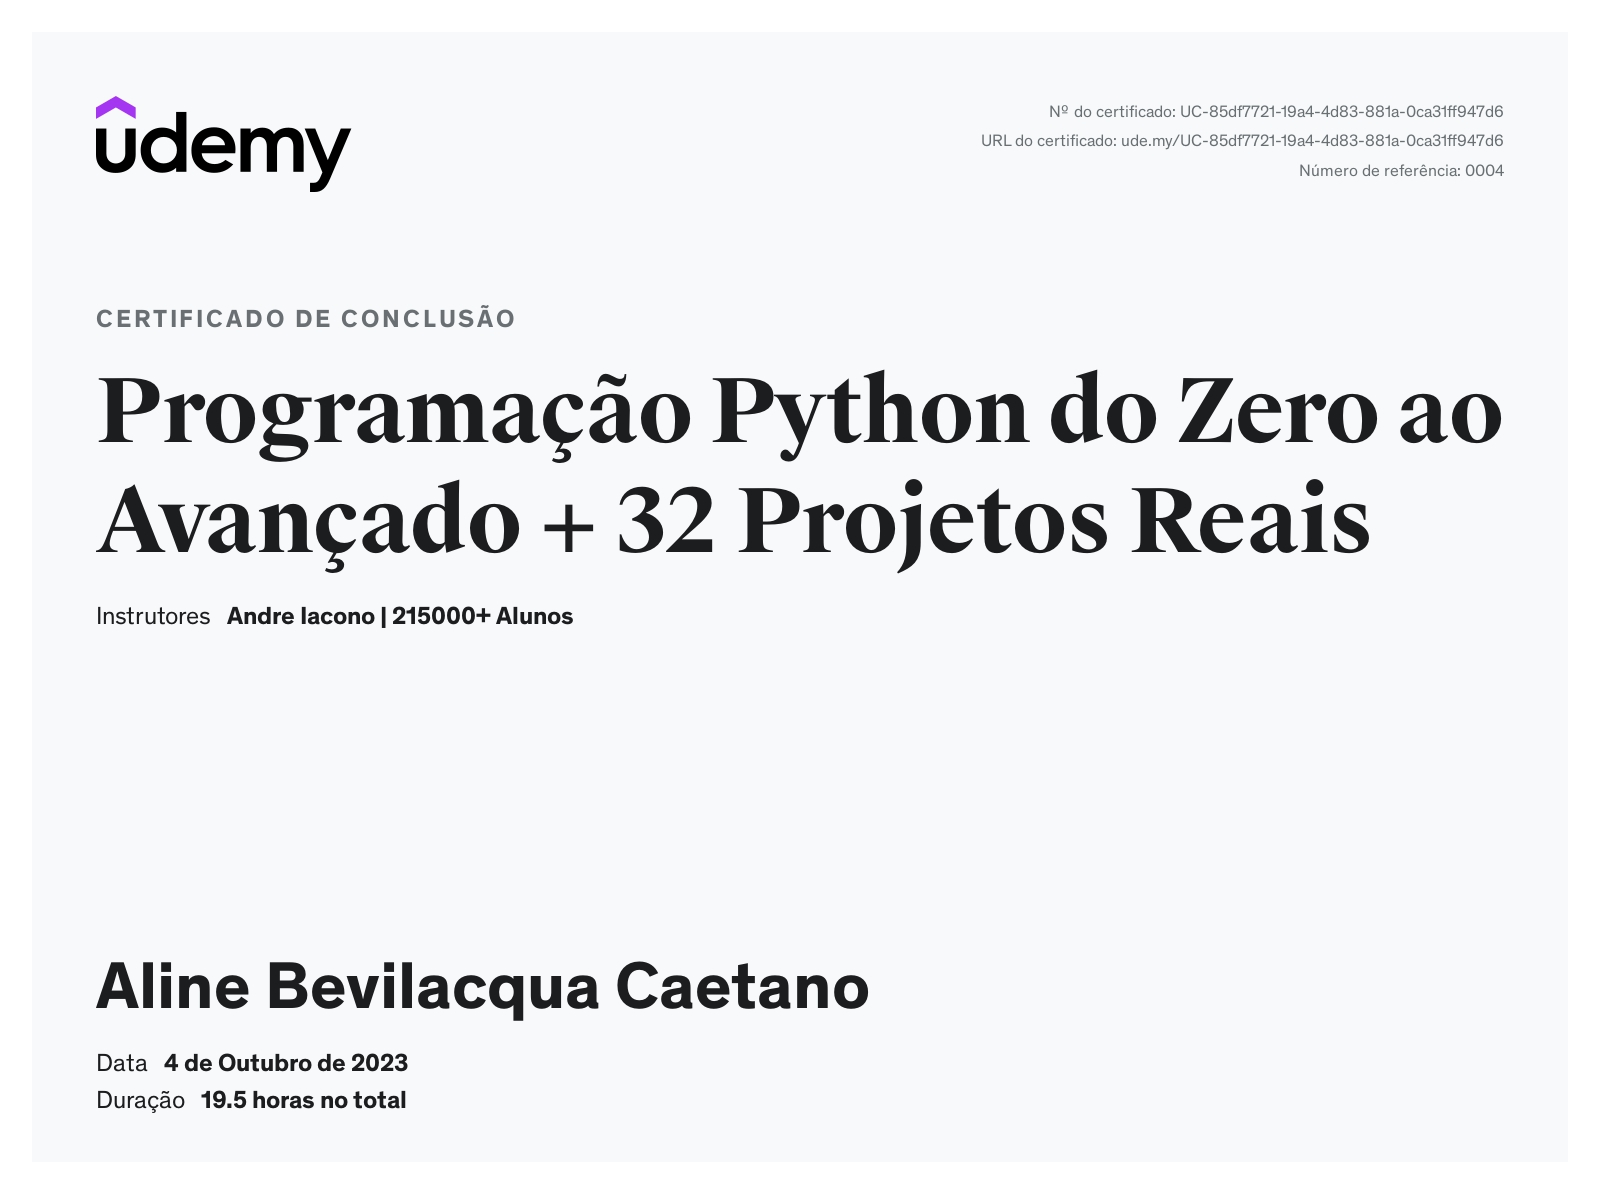 Certificado do curso de Python do André Iacono